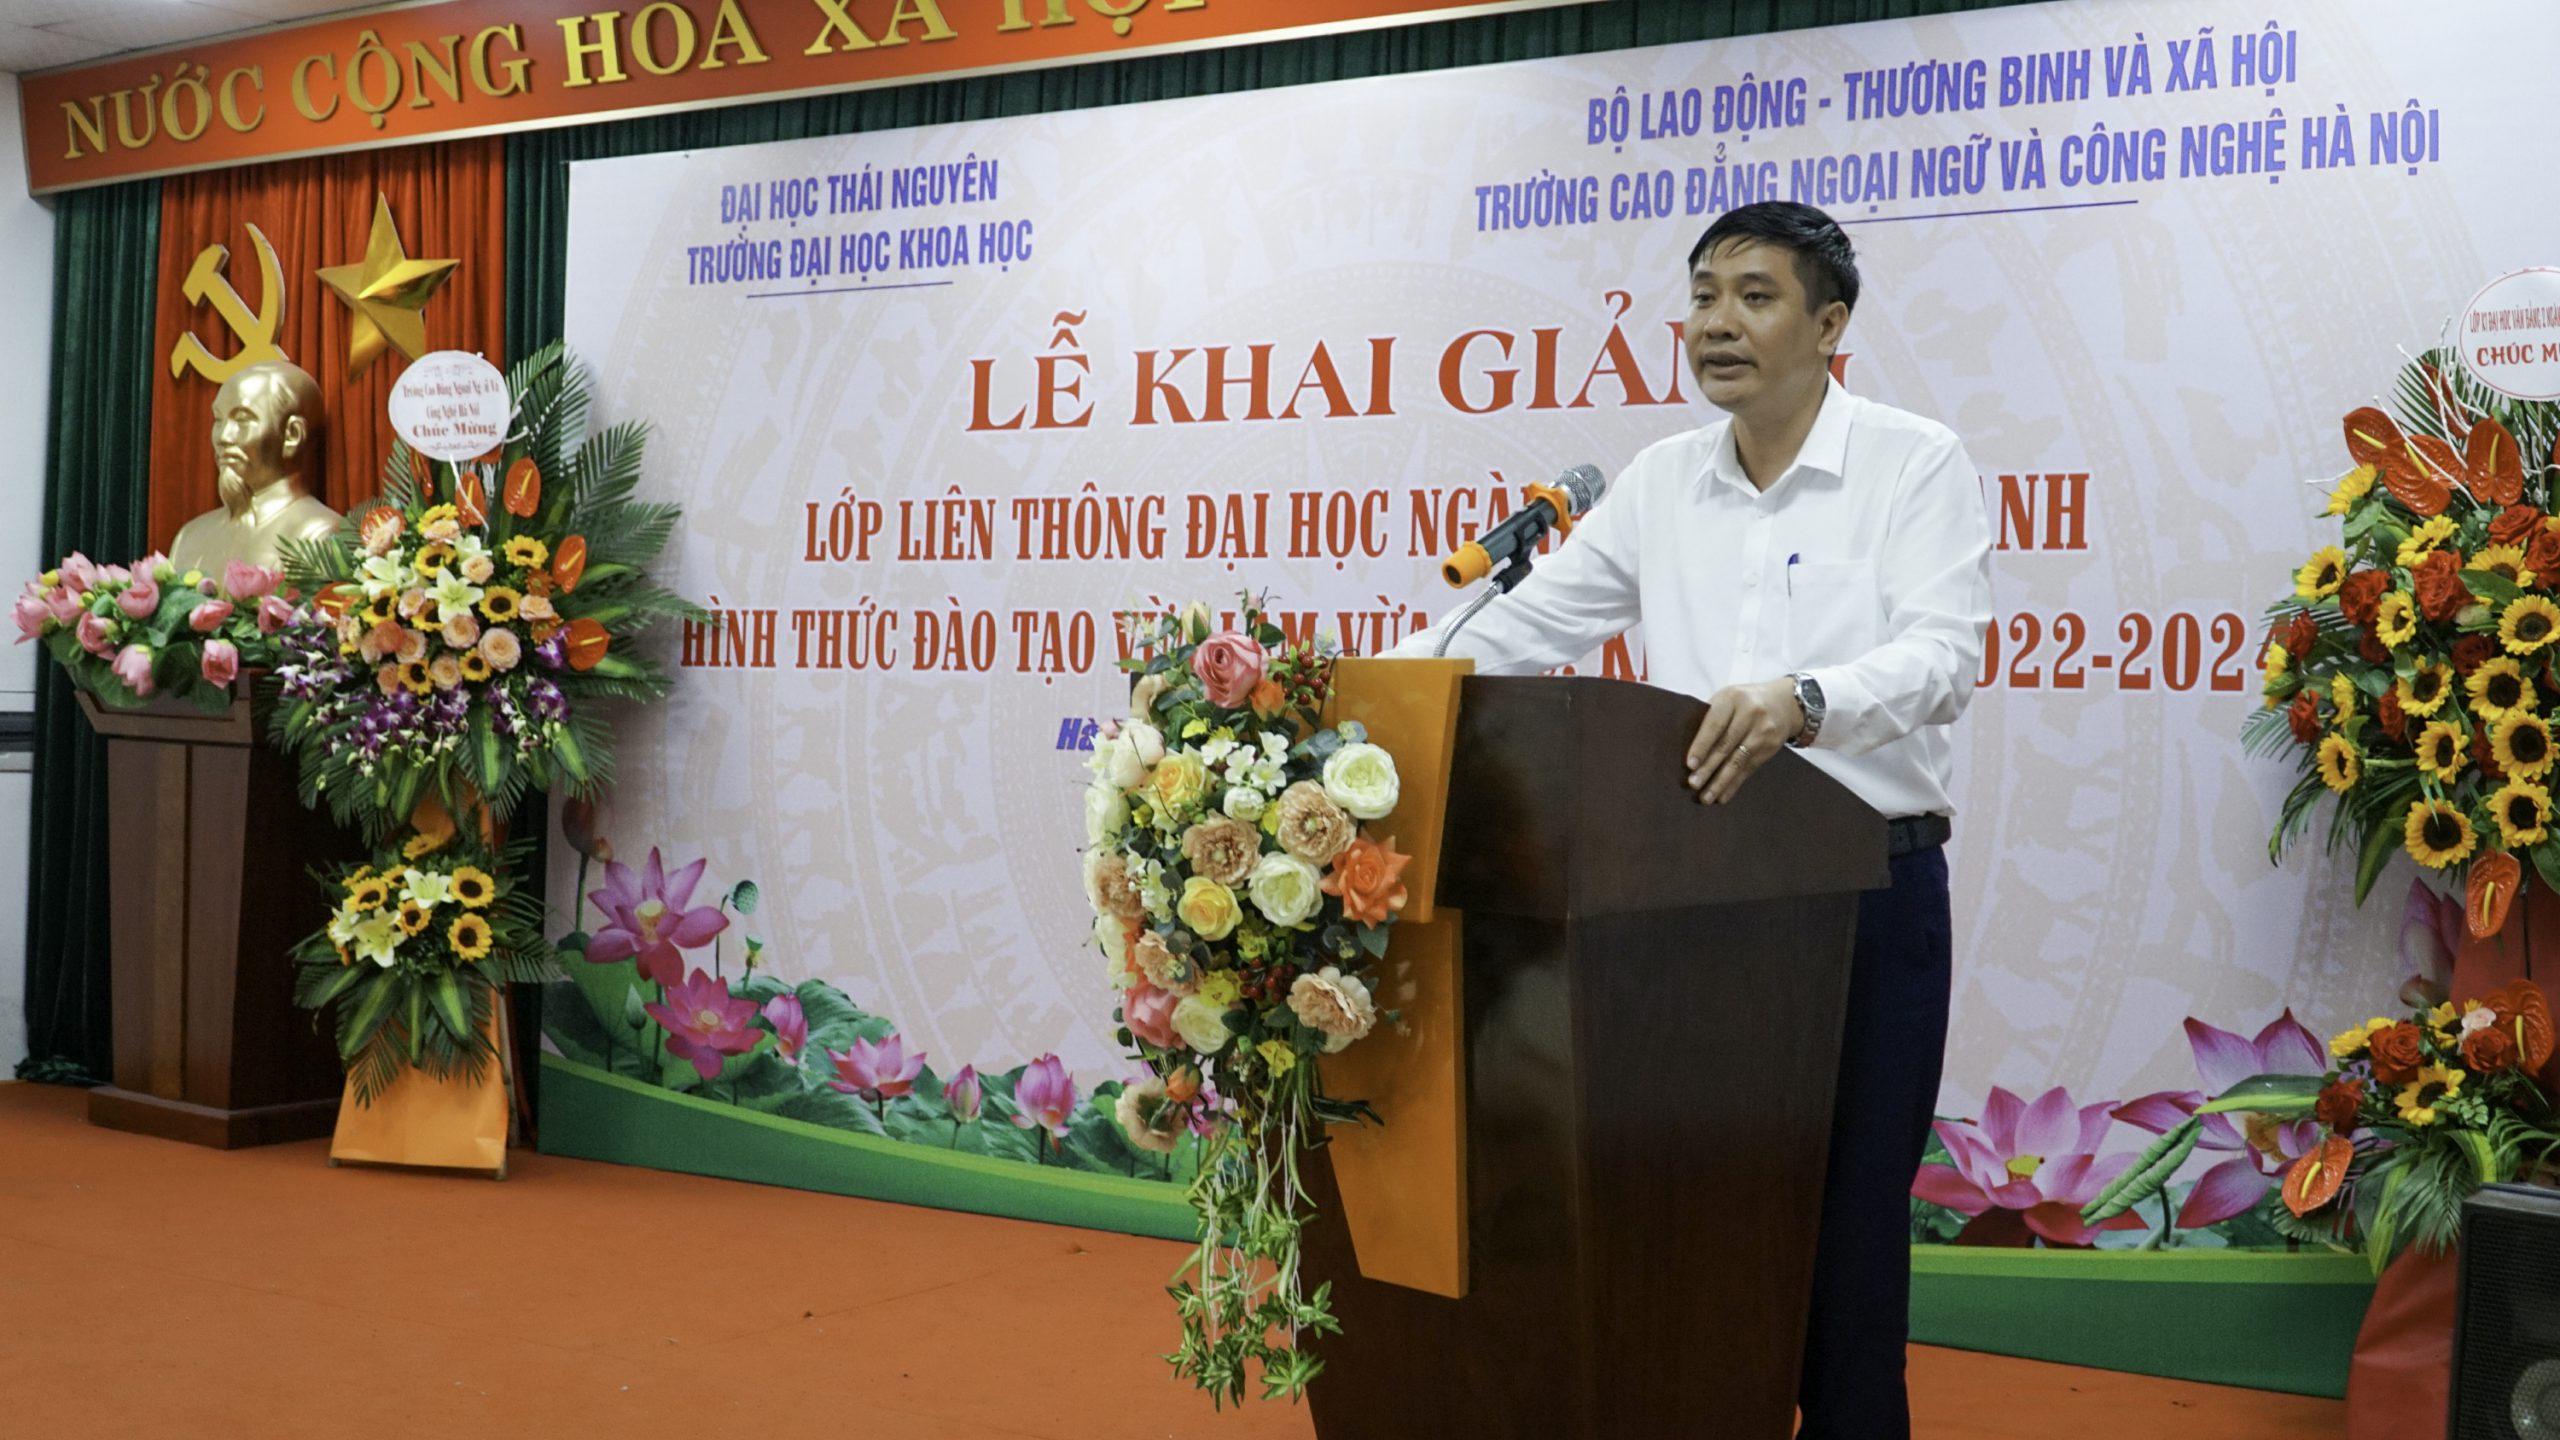 PGS.TS Nguyễn Văn Đăng - Hiệu trưởng Trường Đại học Khoa học - Đại học Thái Nguyên phát biểu khai giảng